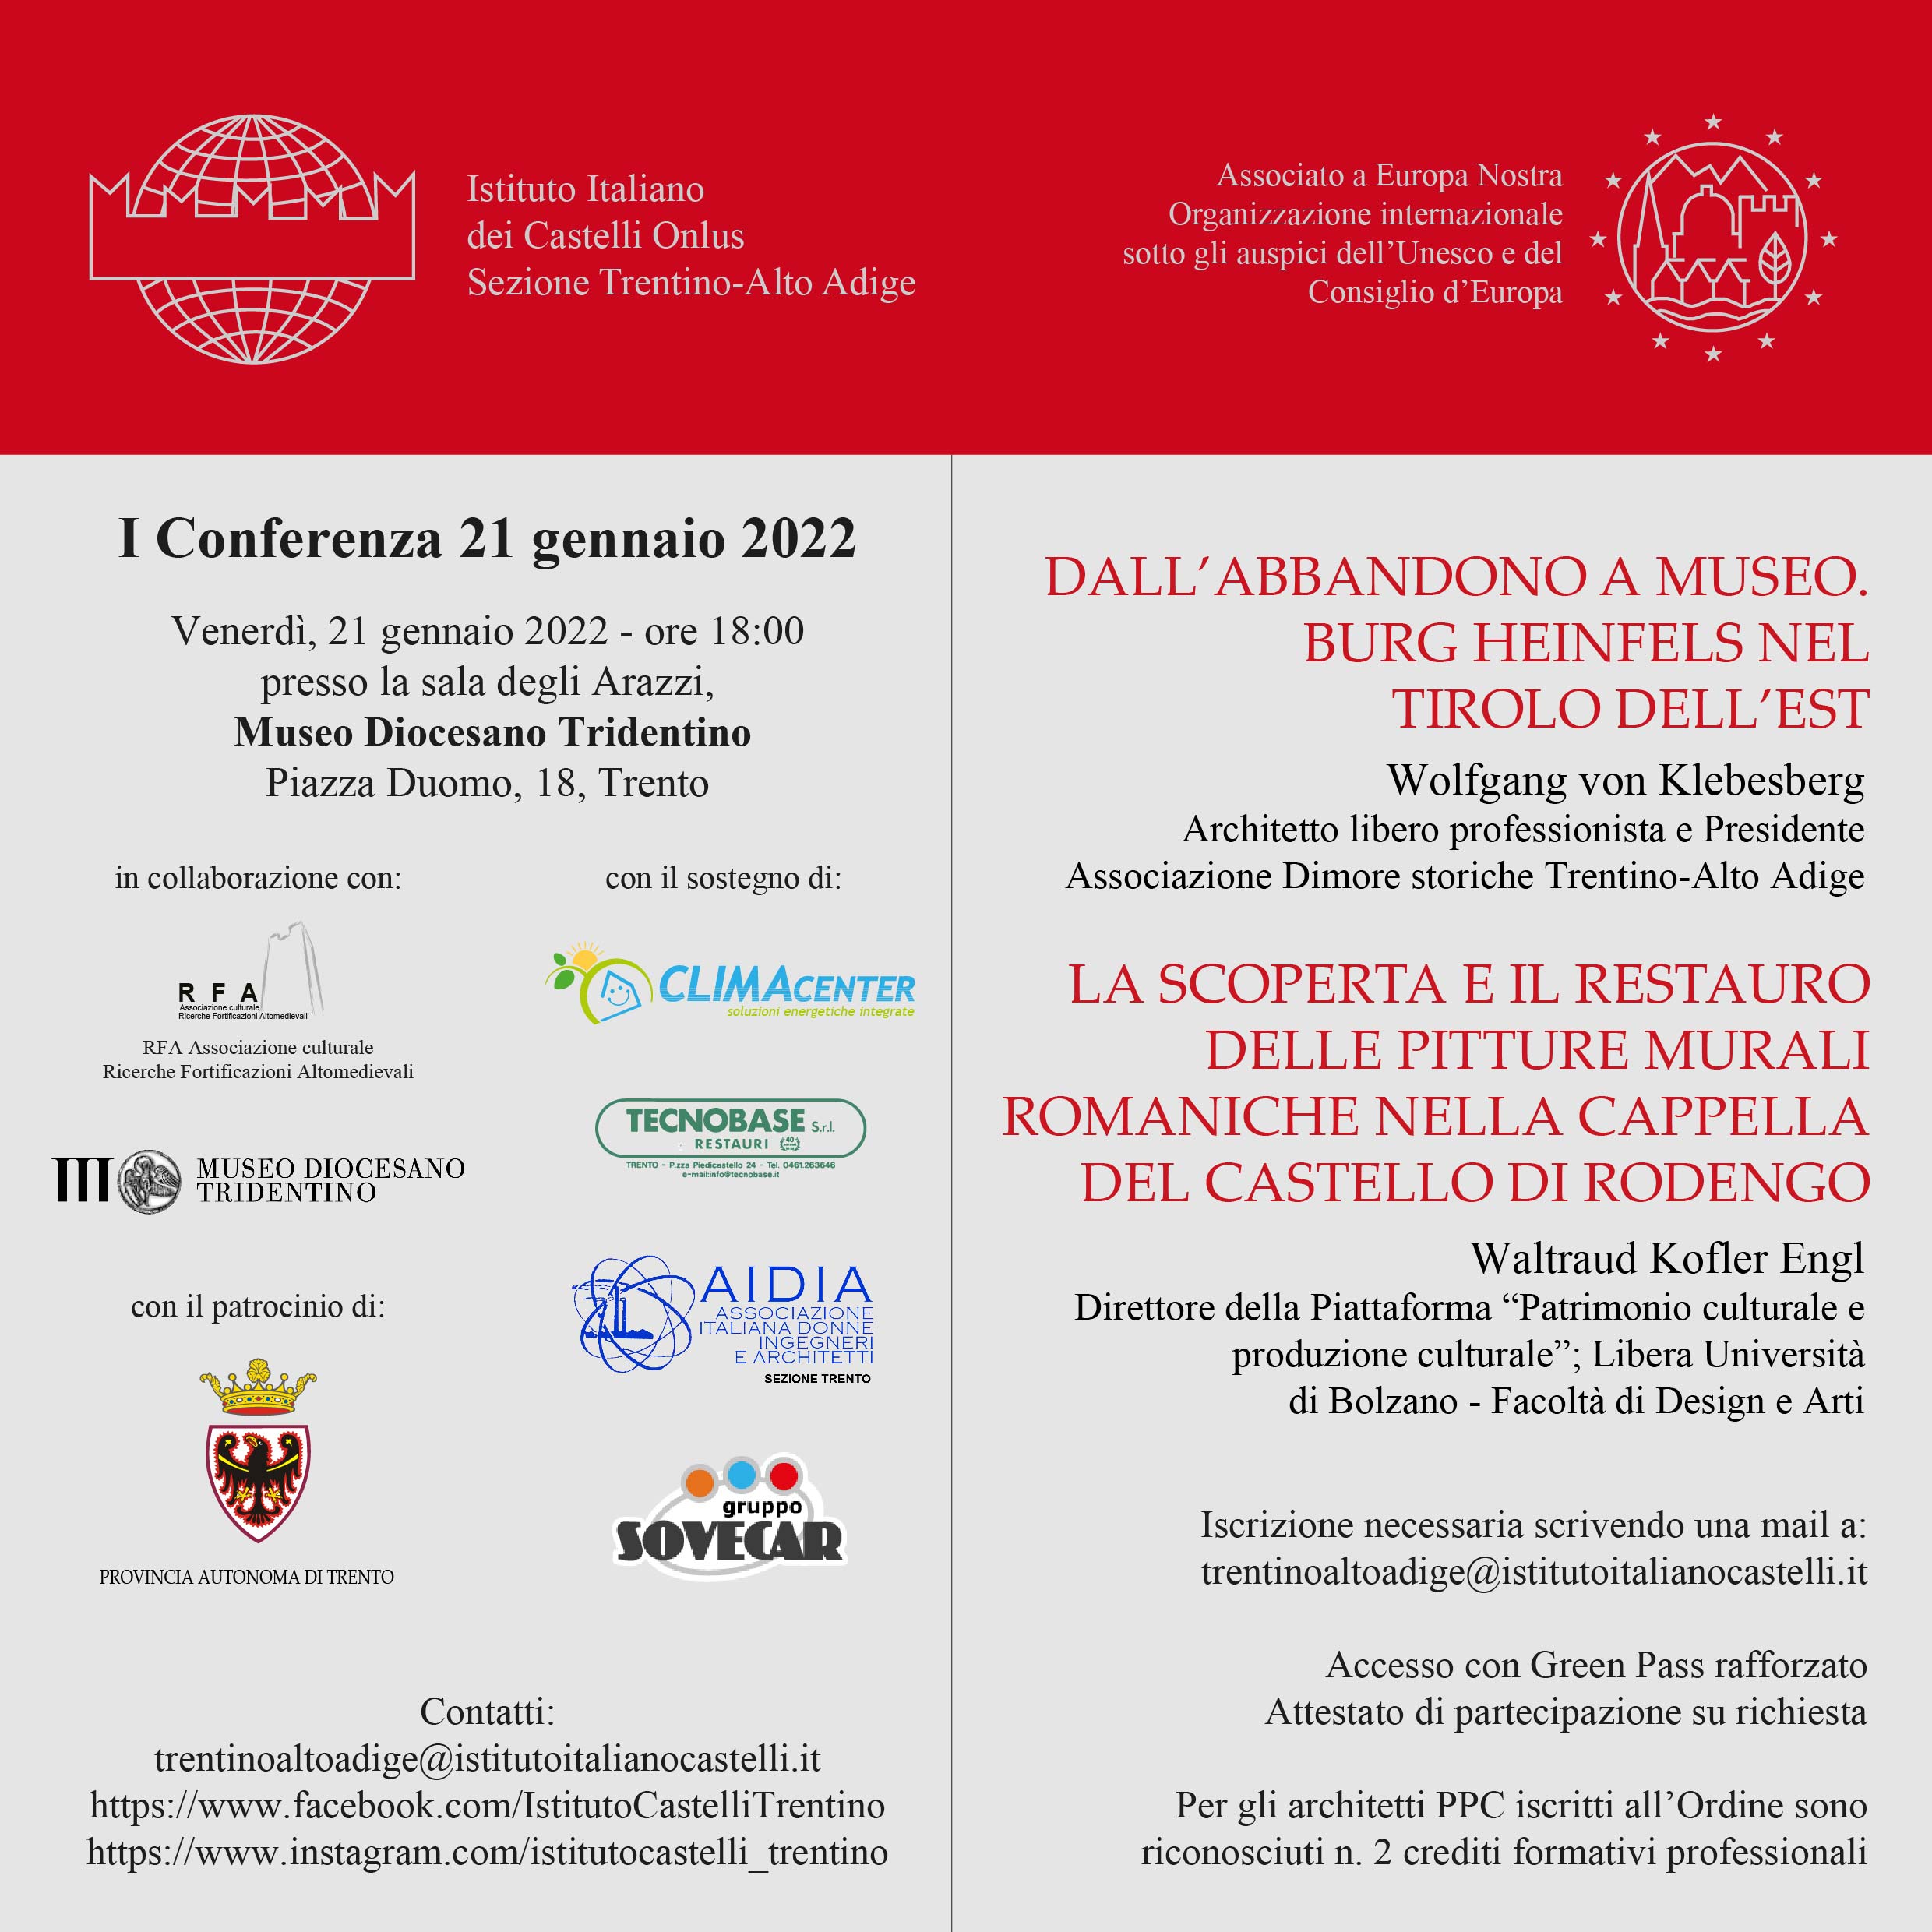 Sezione Trentino Alto Adige: I Conferenza 2022 IIC